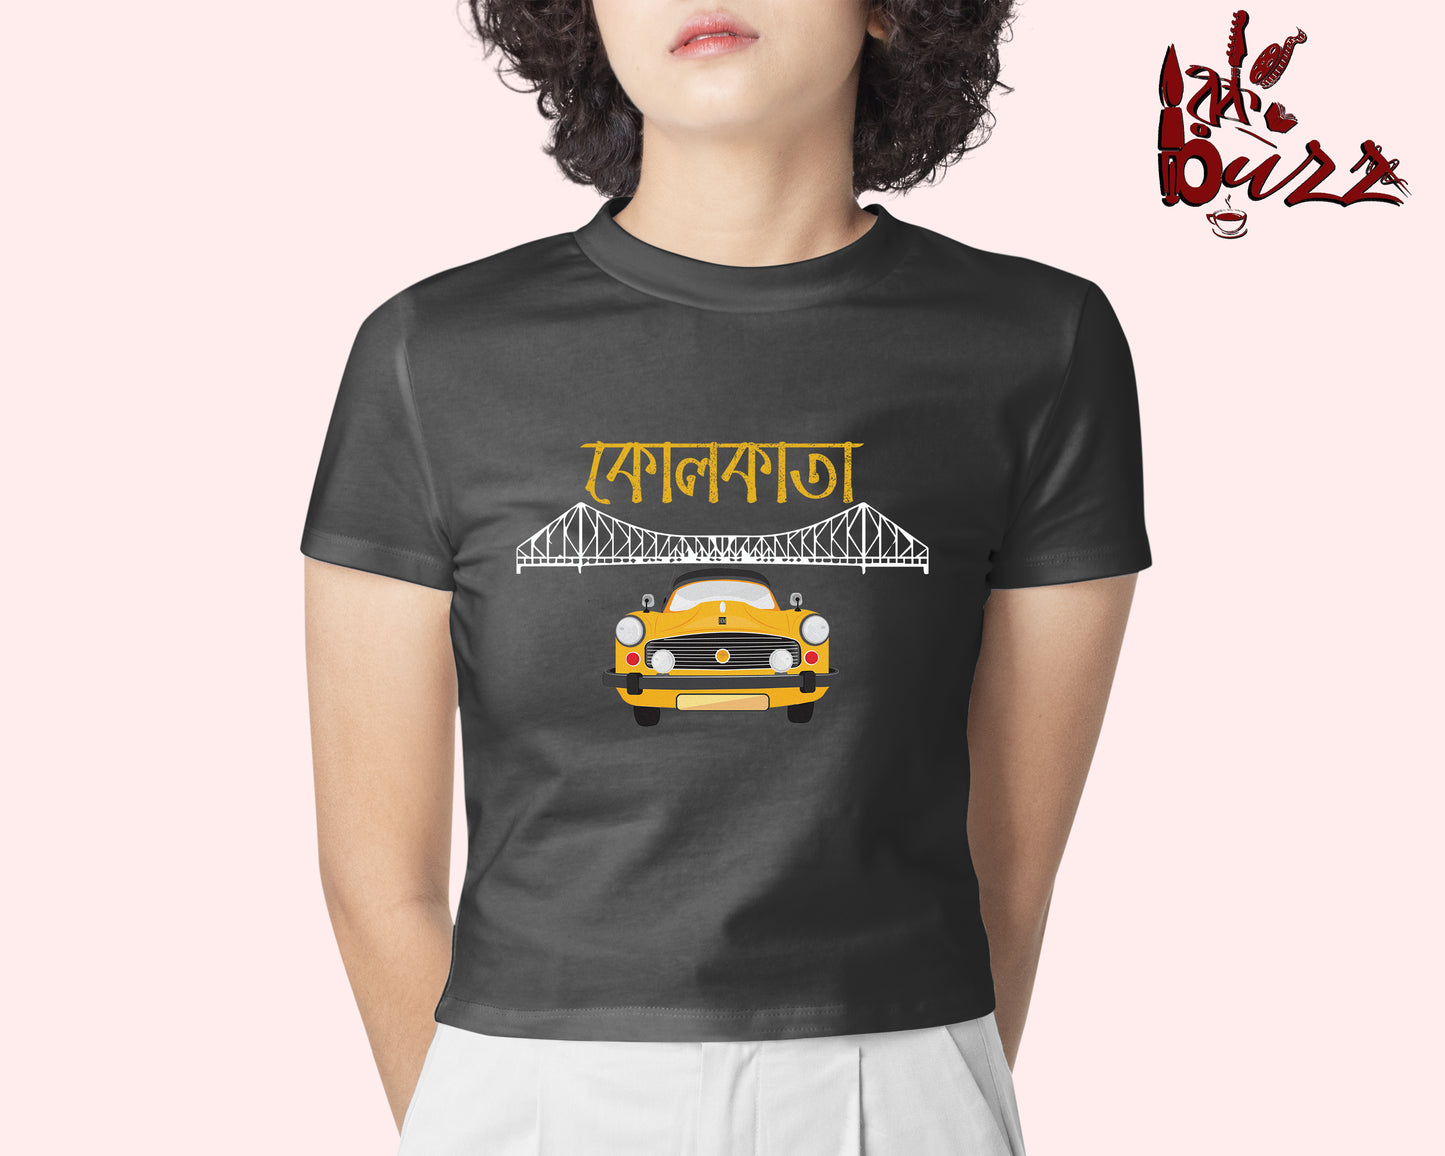 Crop top - Kolkata Taxi printed Bengali women top